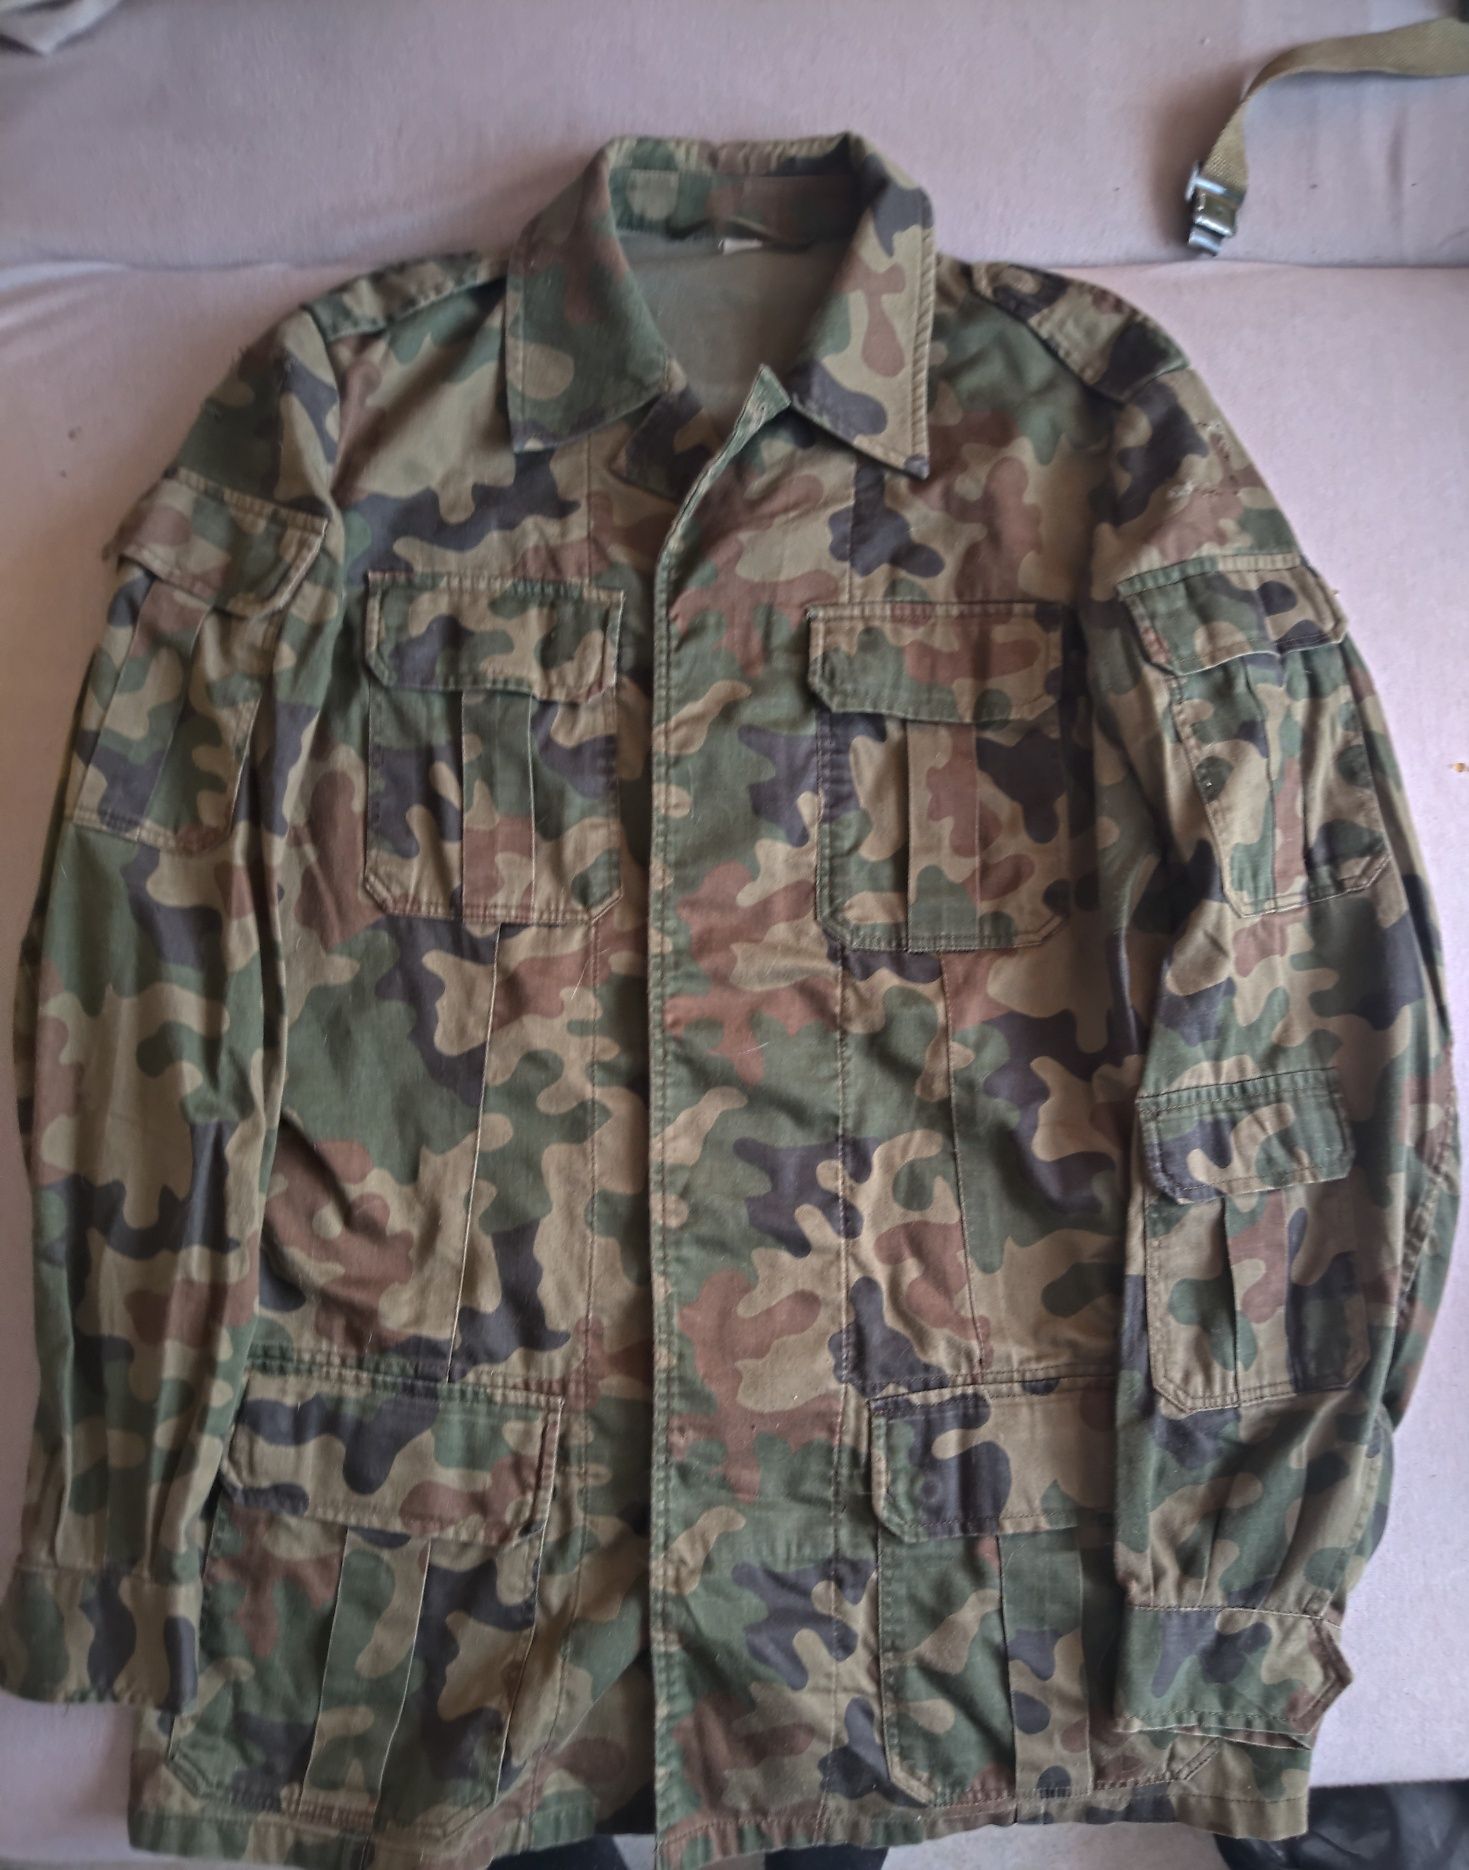 Bluza wz 124 93 polowa wojskowa Bośniak poldres duży rozmiar WP 1999r.